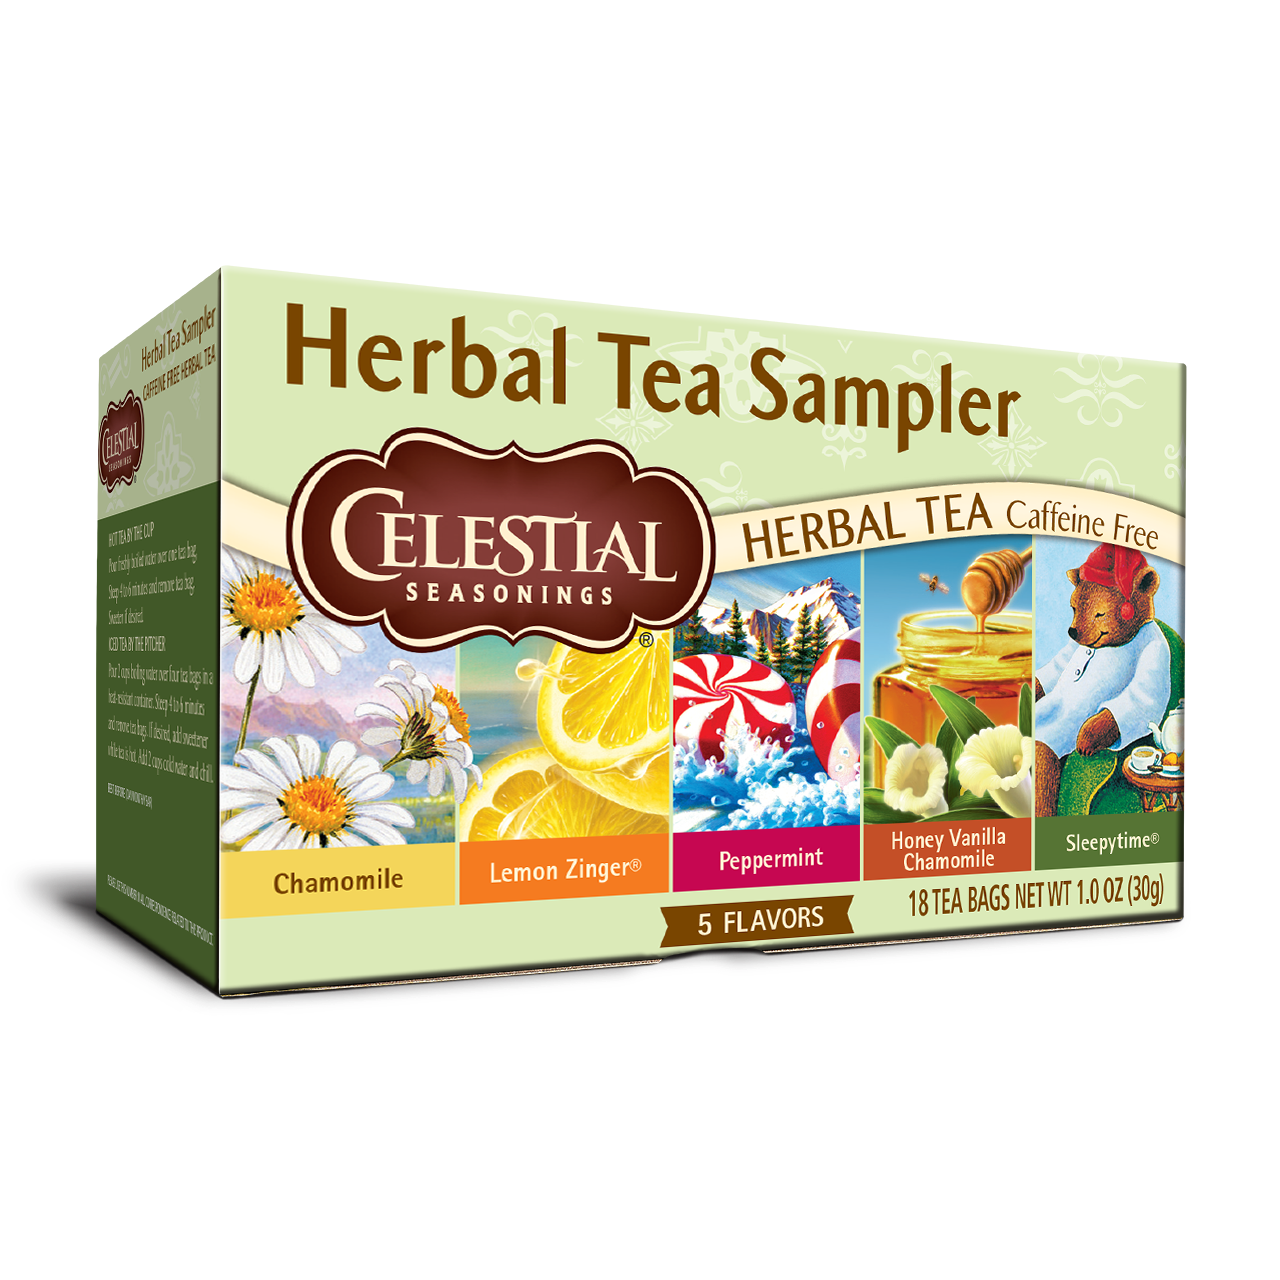 Hibiscus Flower - Prestogeorge Coffee & Tea